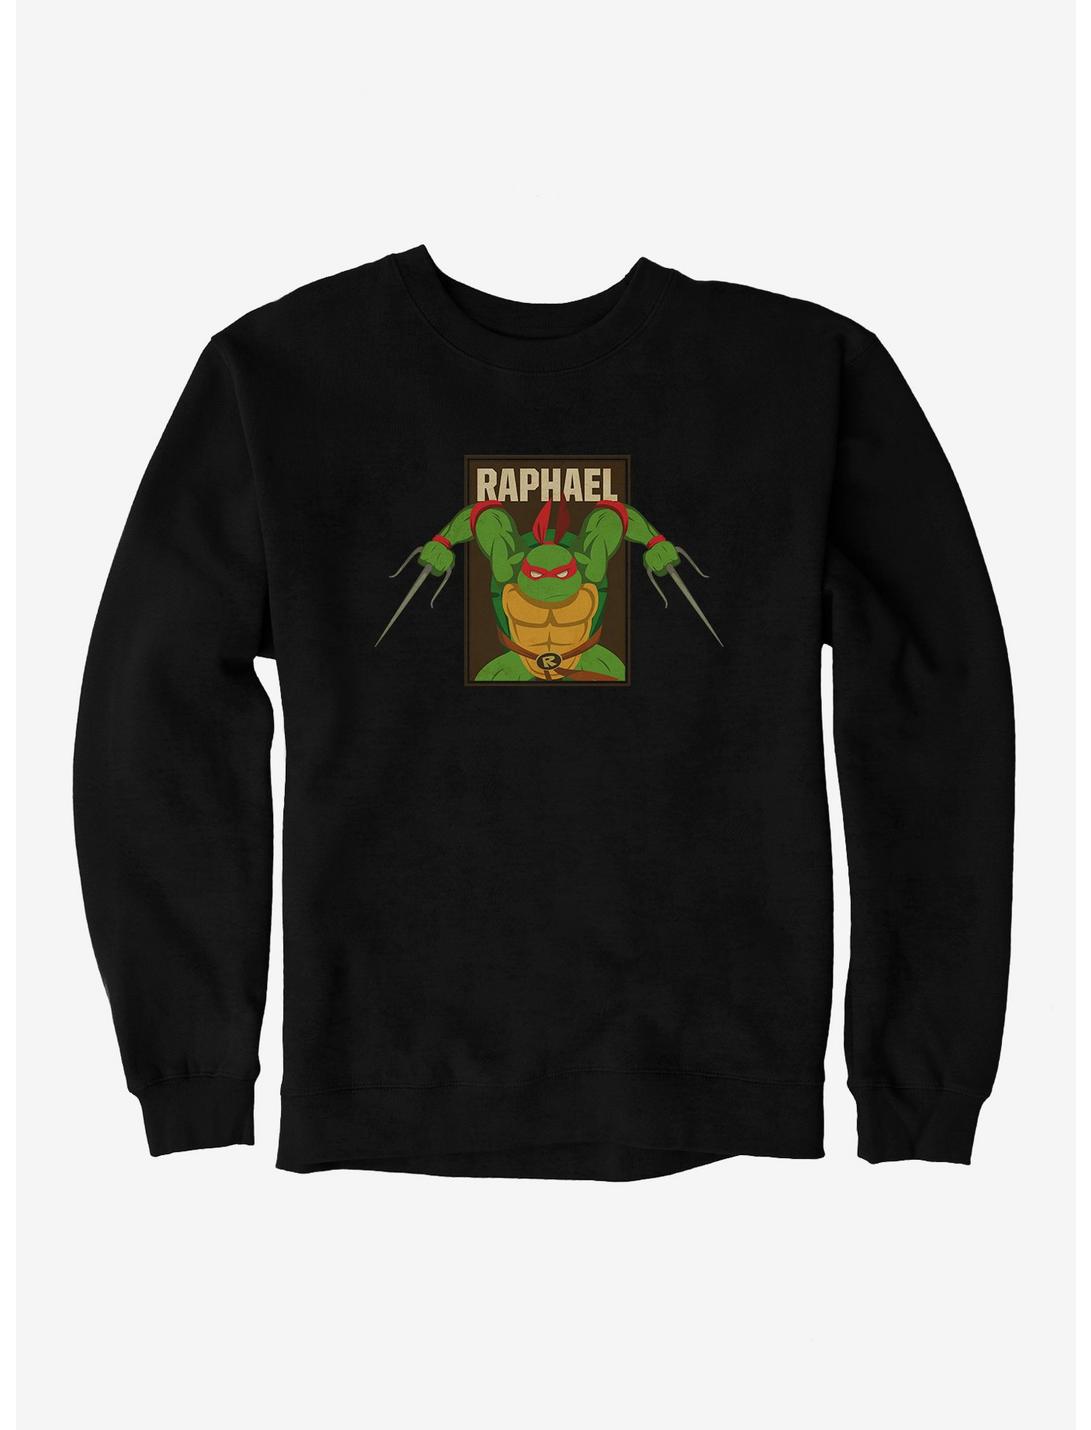 Teenage Mutant Ninja Turtles Raphael Action Pose Square Sweatshirt, BLACK, hi-res